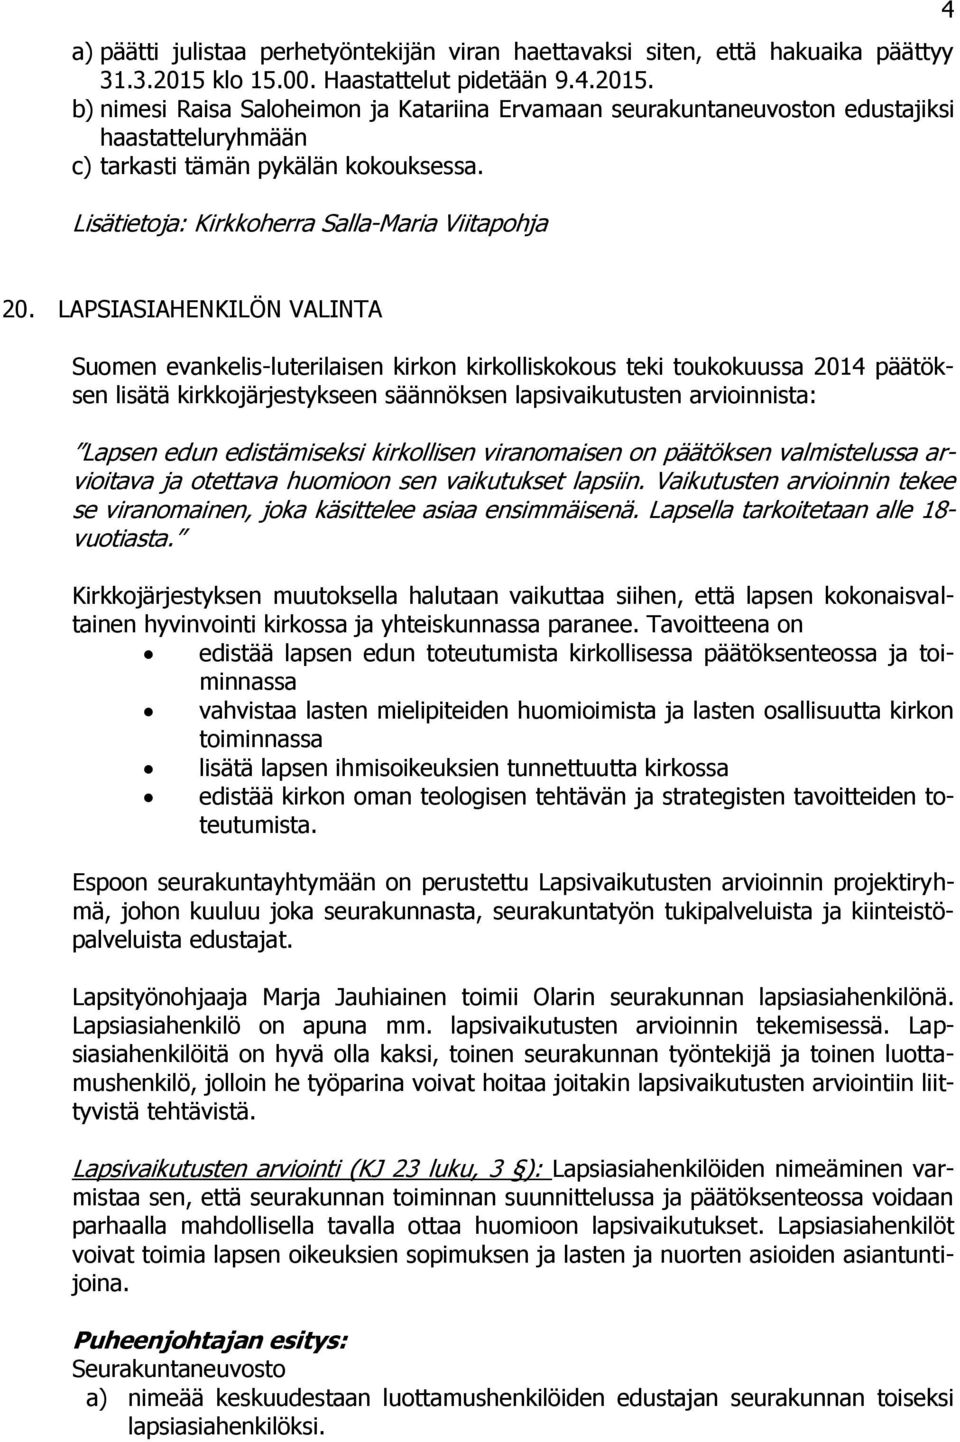 LAPSIASIAHENKILÖN VALINTA Suomen evankelis-luterilaisen kirkon kirkolliskokous teki toukokuussa 2014 päätöksen lisätä kirkkojärjestykseen säännöksen lapsivaikutusten arvioinnista: Lapsen edun